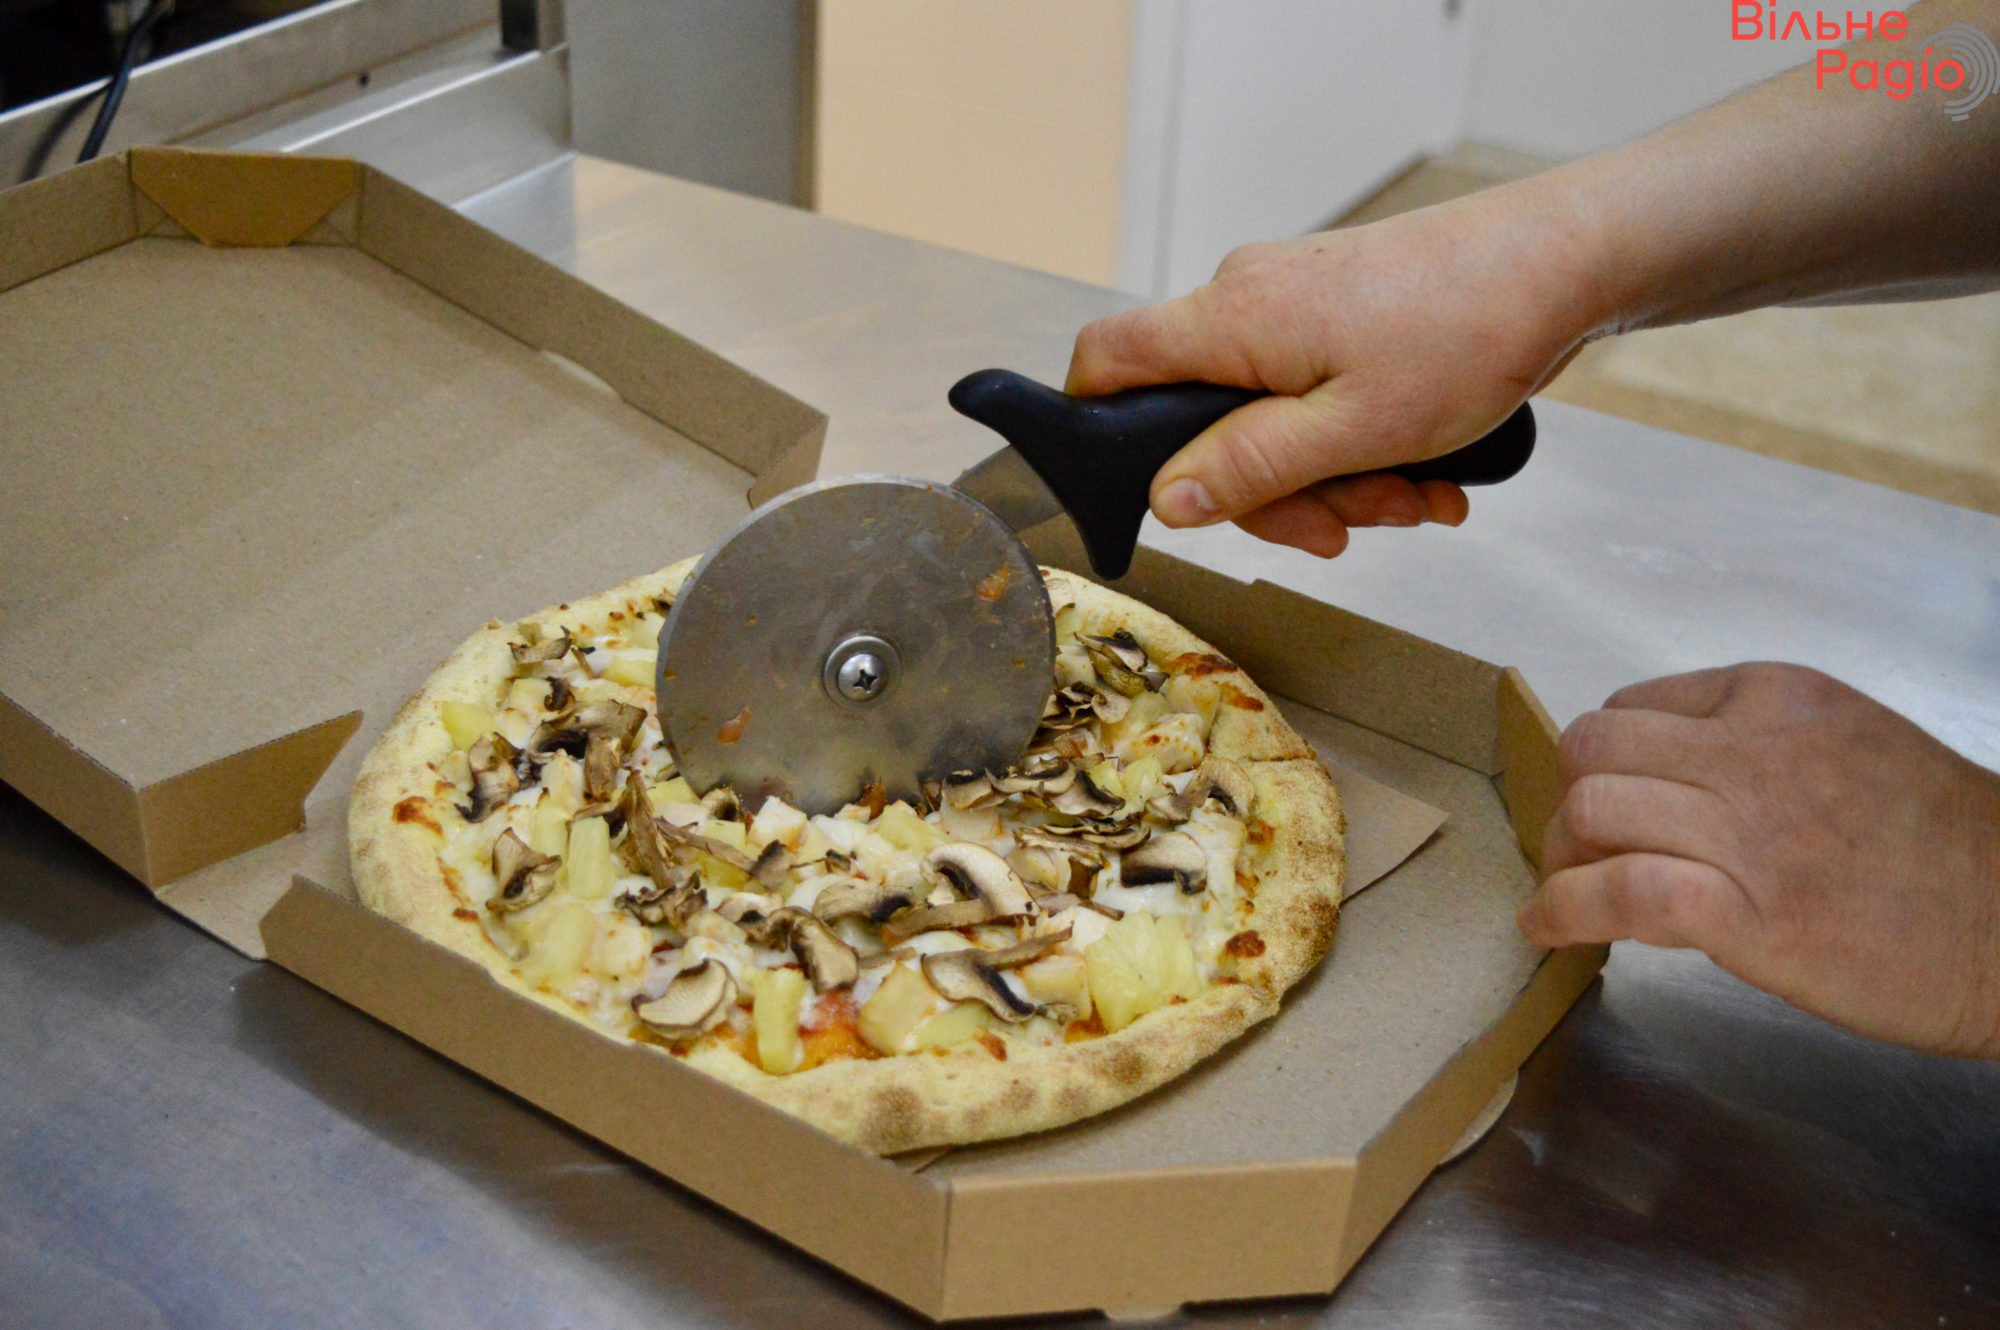 Східна піца у Києві: як працює мережа, яка пекла по 1500 благодійних піц на Донеччині, і витримує тісто по 3 дні (репортаж) 7